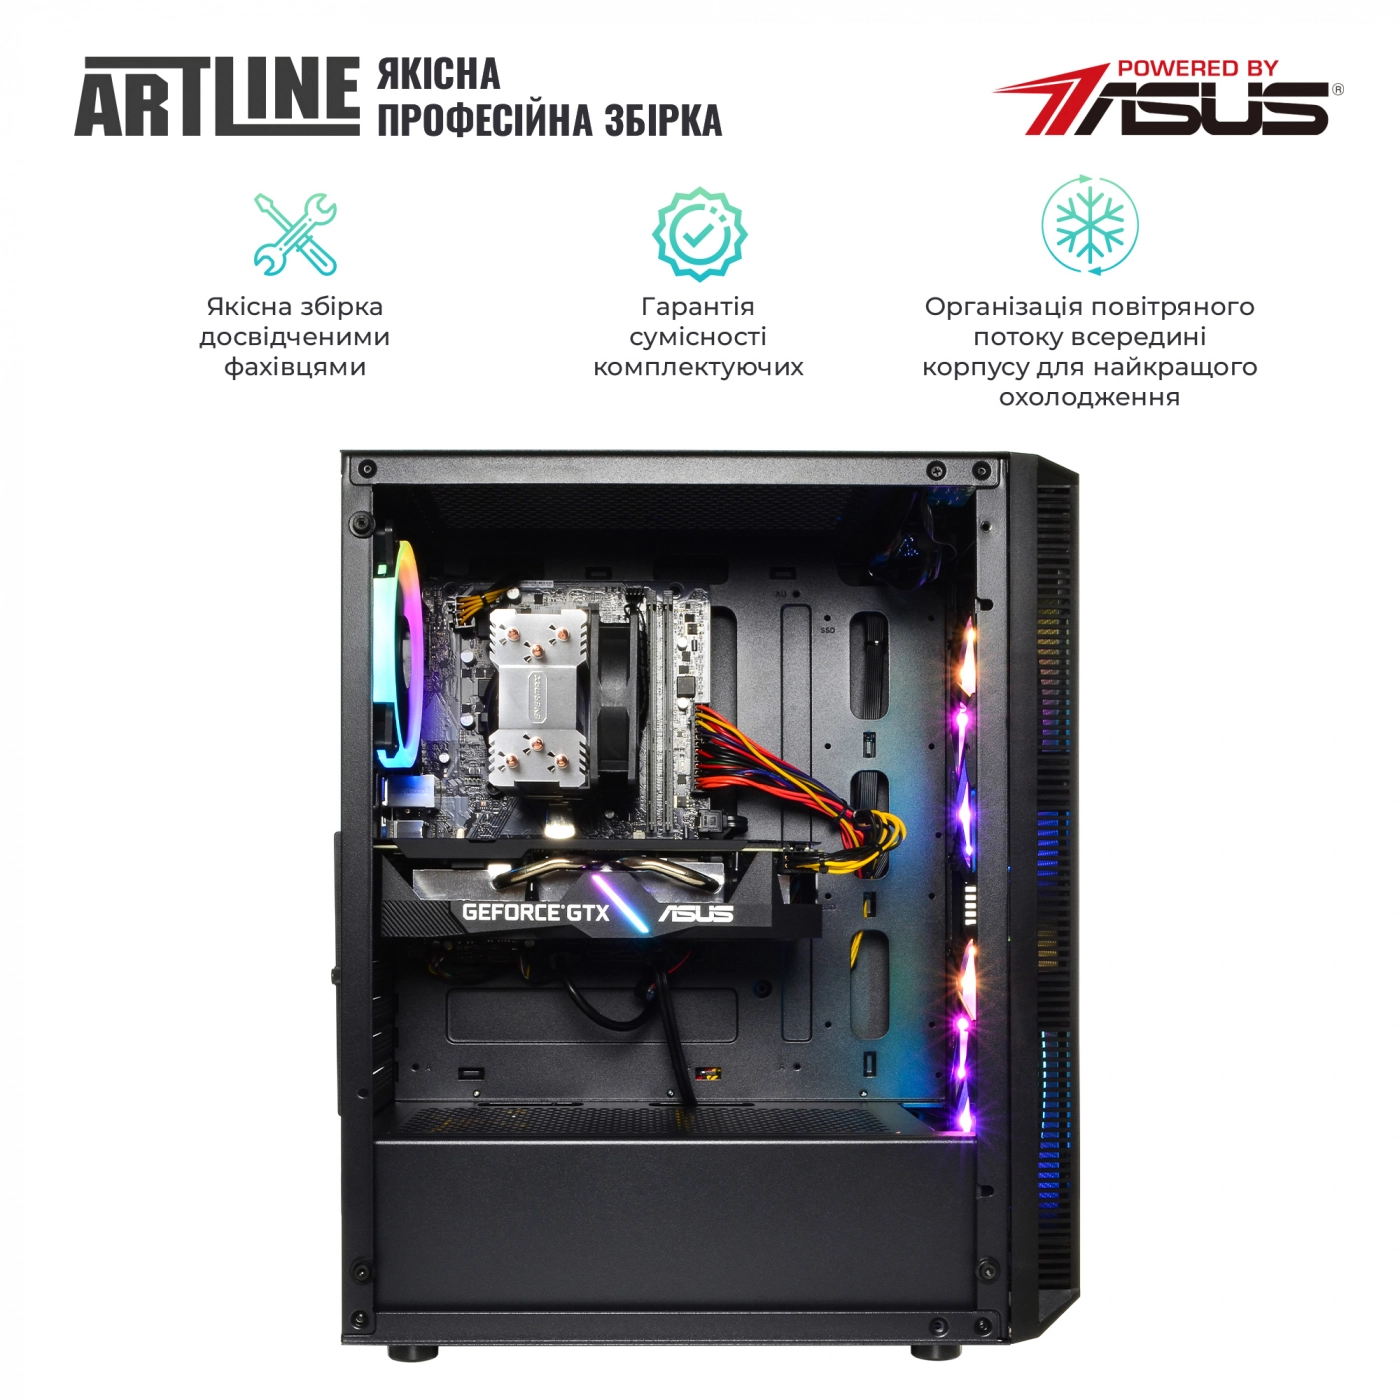 Купить Компьютер ARTLINE Gaming X53v20 - фото 6